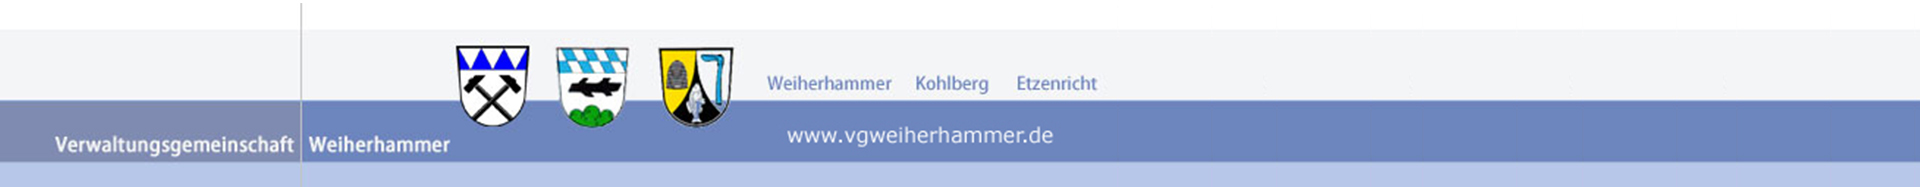 Verwaltungsgemeinschaft Weiherhammer